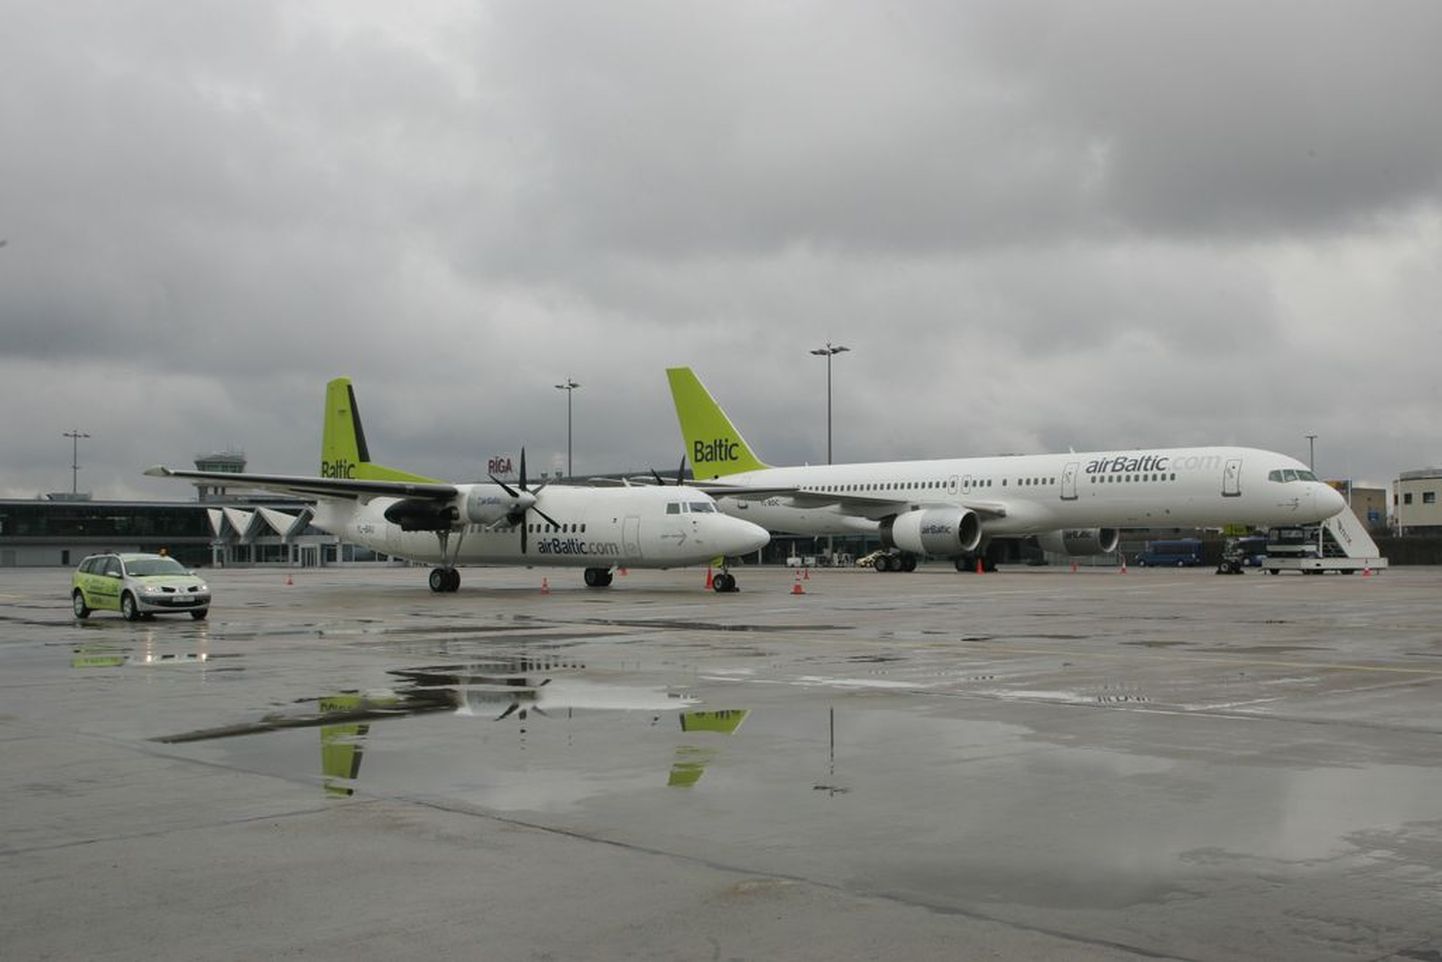 AirBaltic olevat koos Riia lennujaamaga tekitanud 900 miljoni kroonise kahju konkurendile.